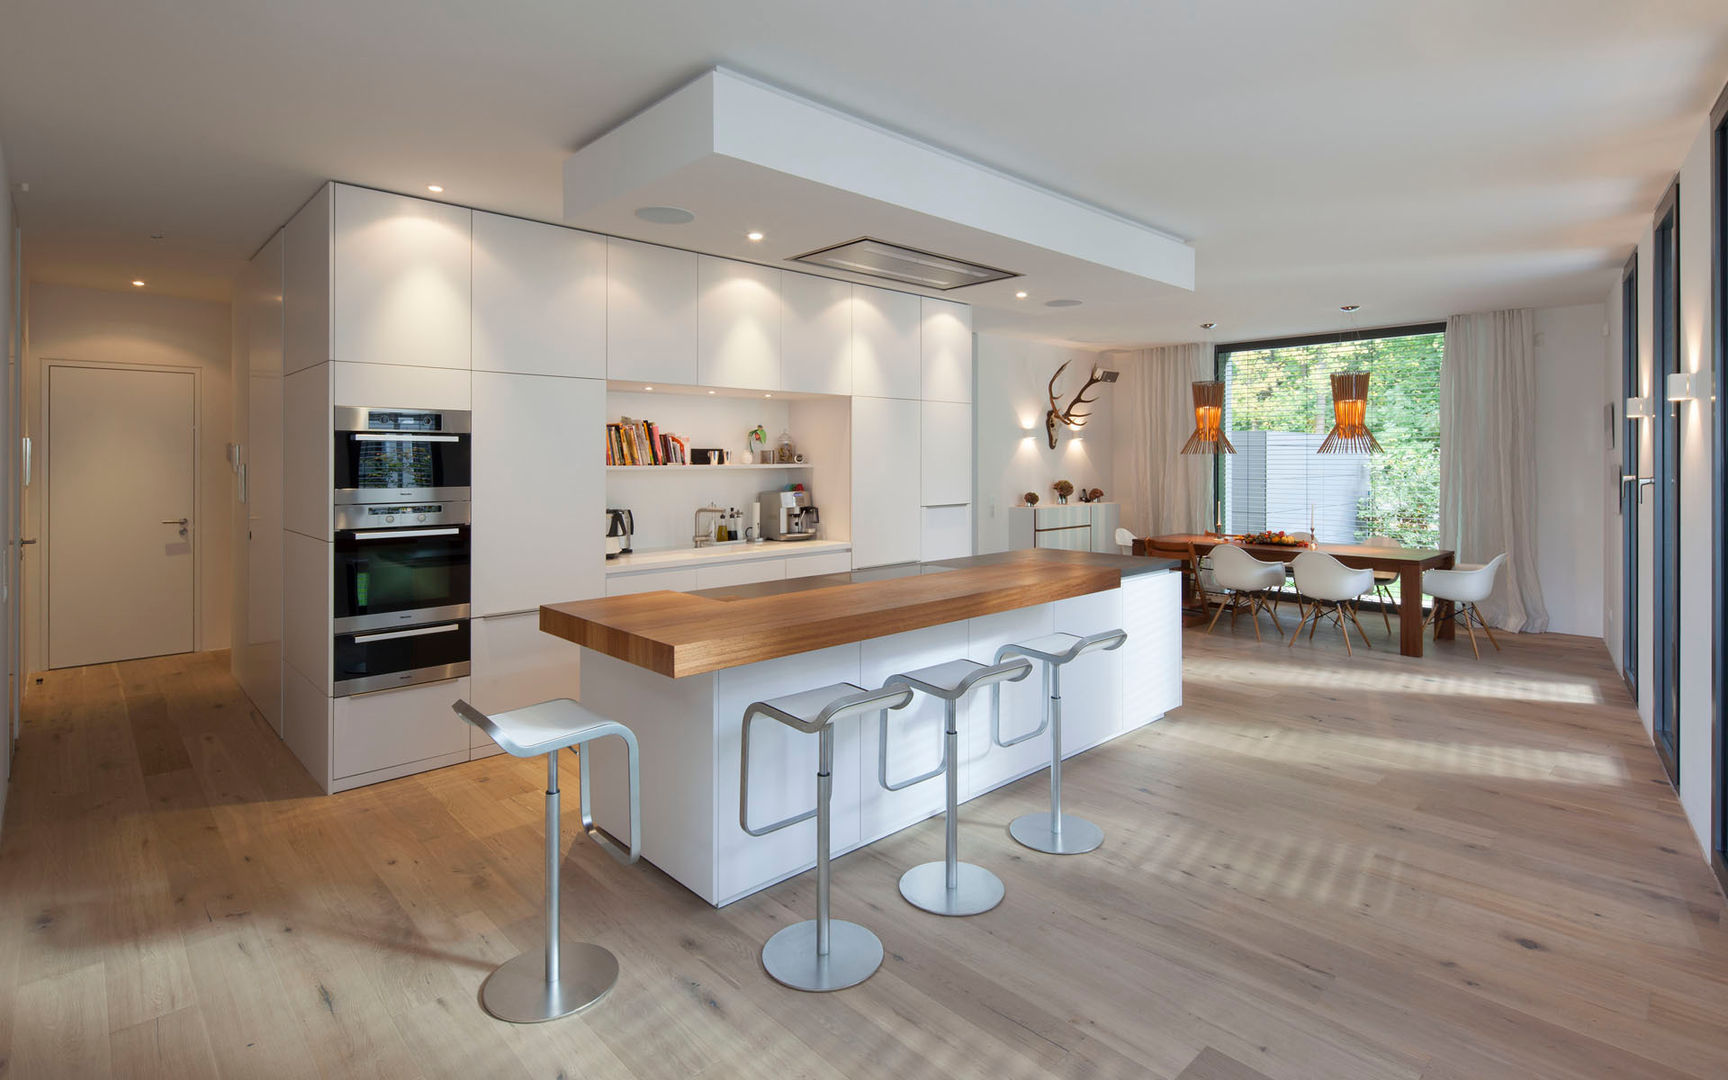 Küche S., rother küchenkonzepte + möbeldesign Gmbh rother küchenkonzepte + möbeldesign Gmbh Modern kitchen